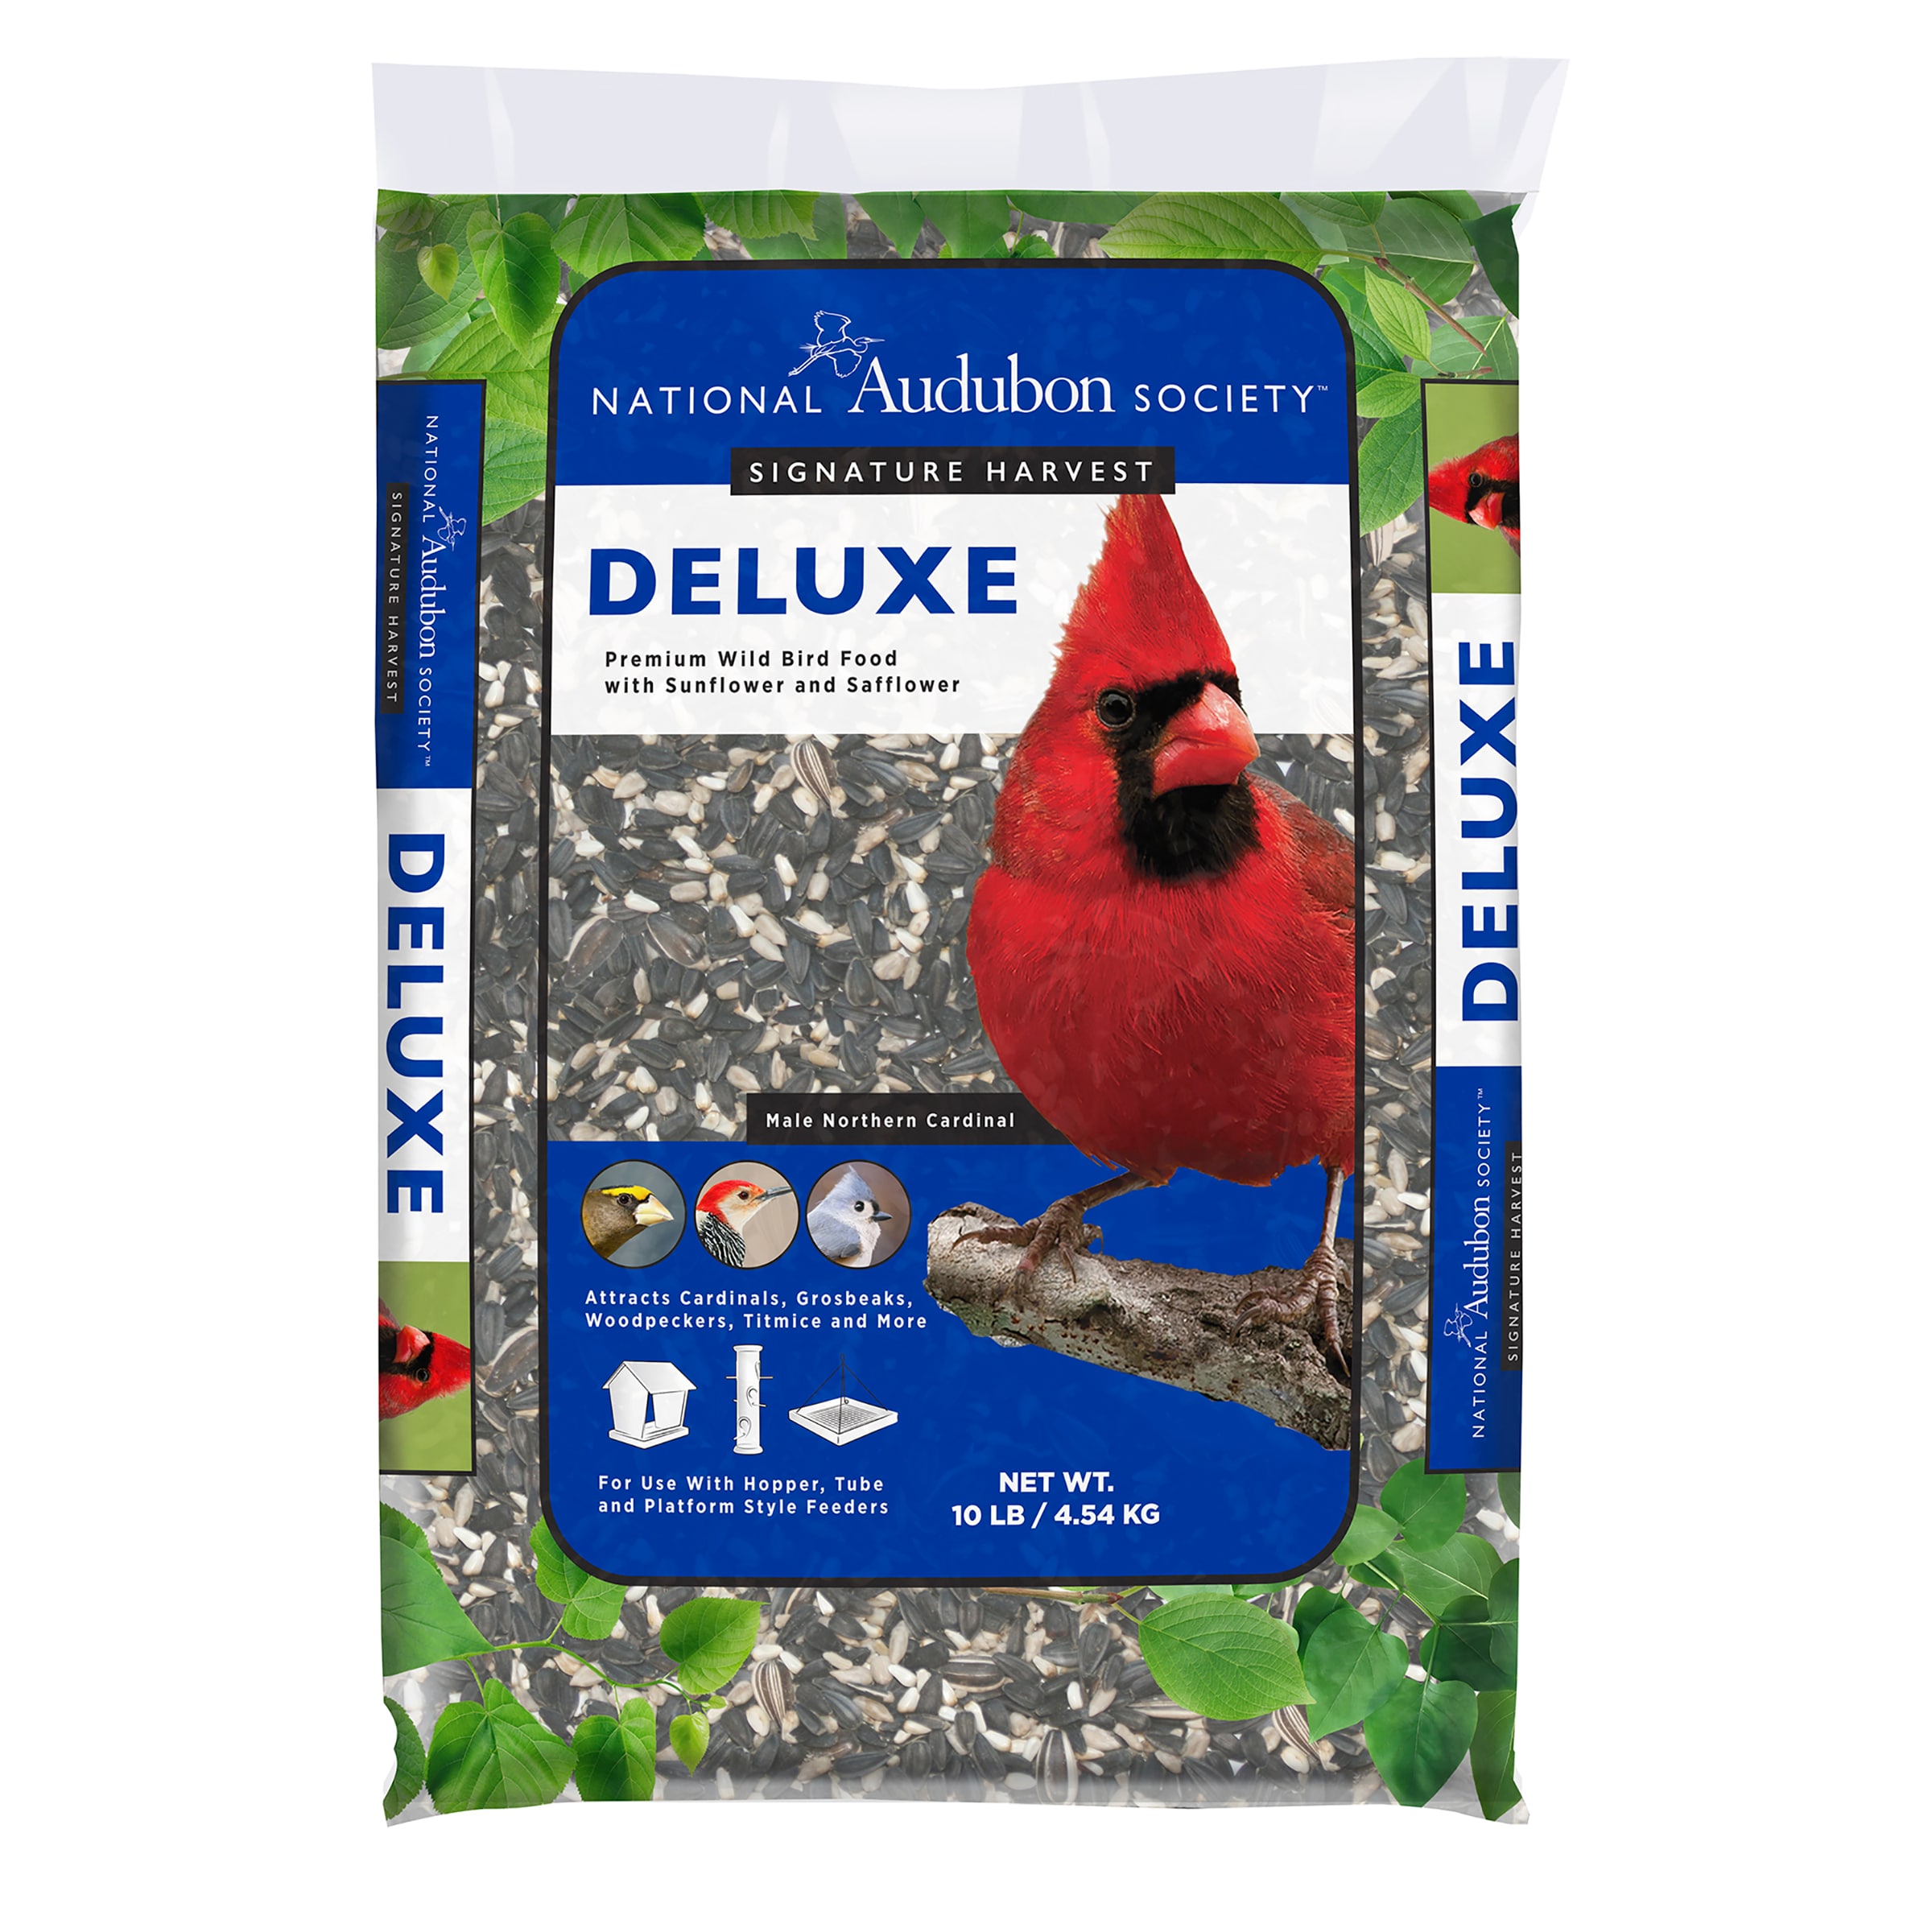 AUDUBON PARK Cardinal Blend Wild Bird Food, 4-lb bag 